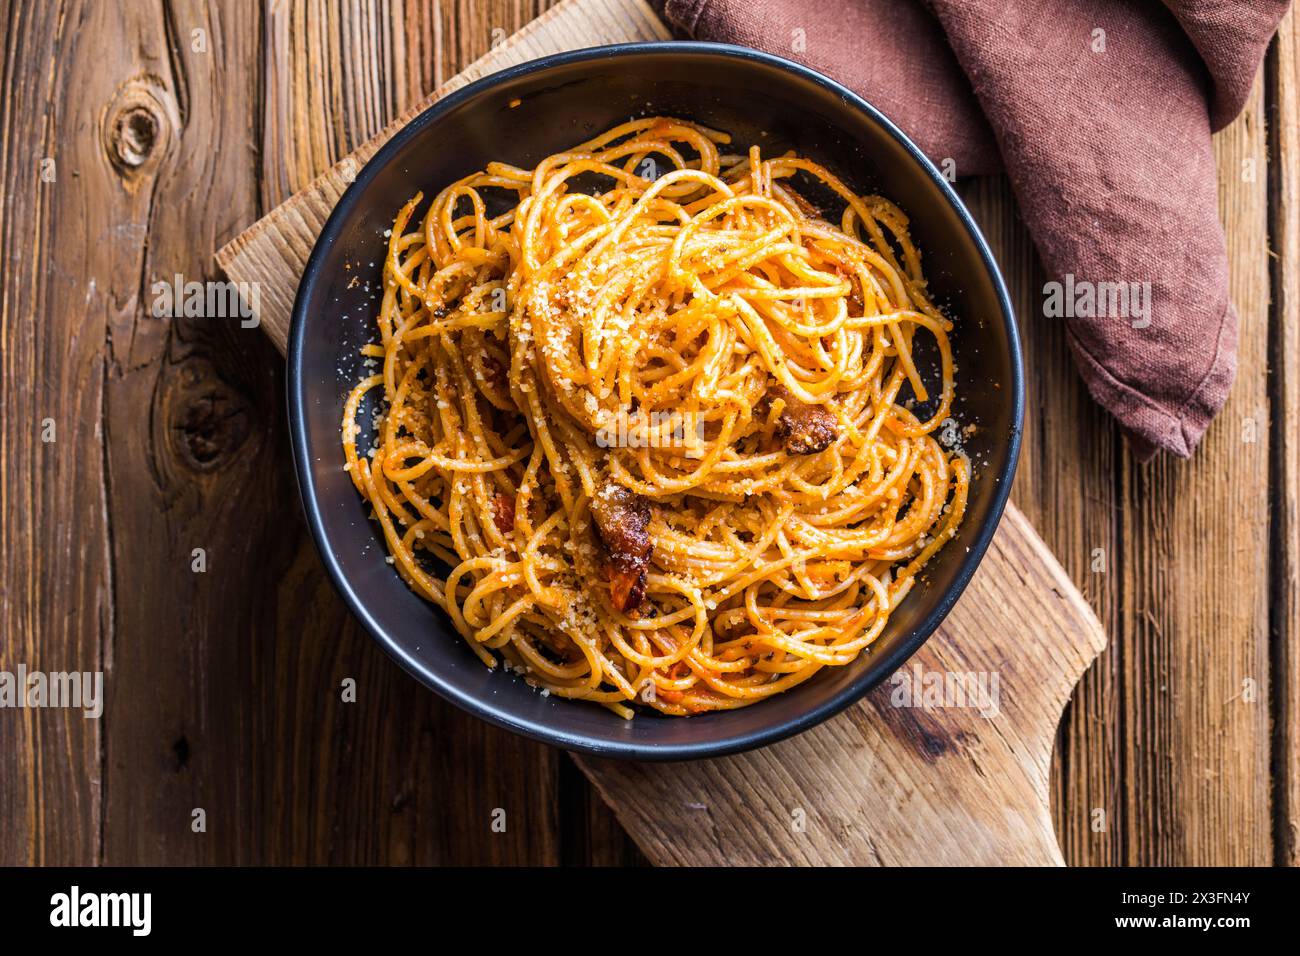 Spaghetti alla puttanesca - italian pasta dish Stock Photo